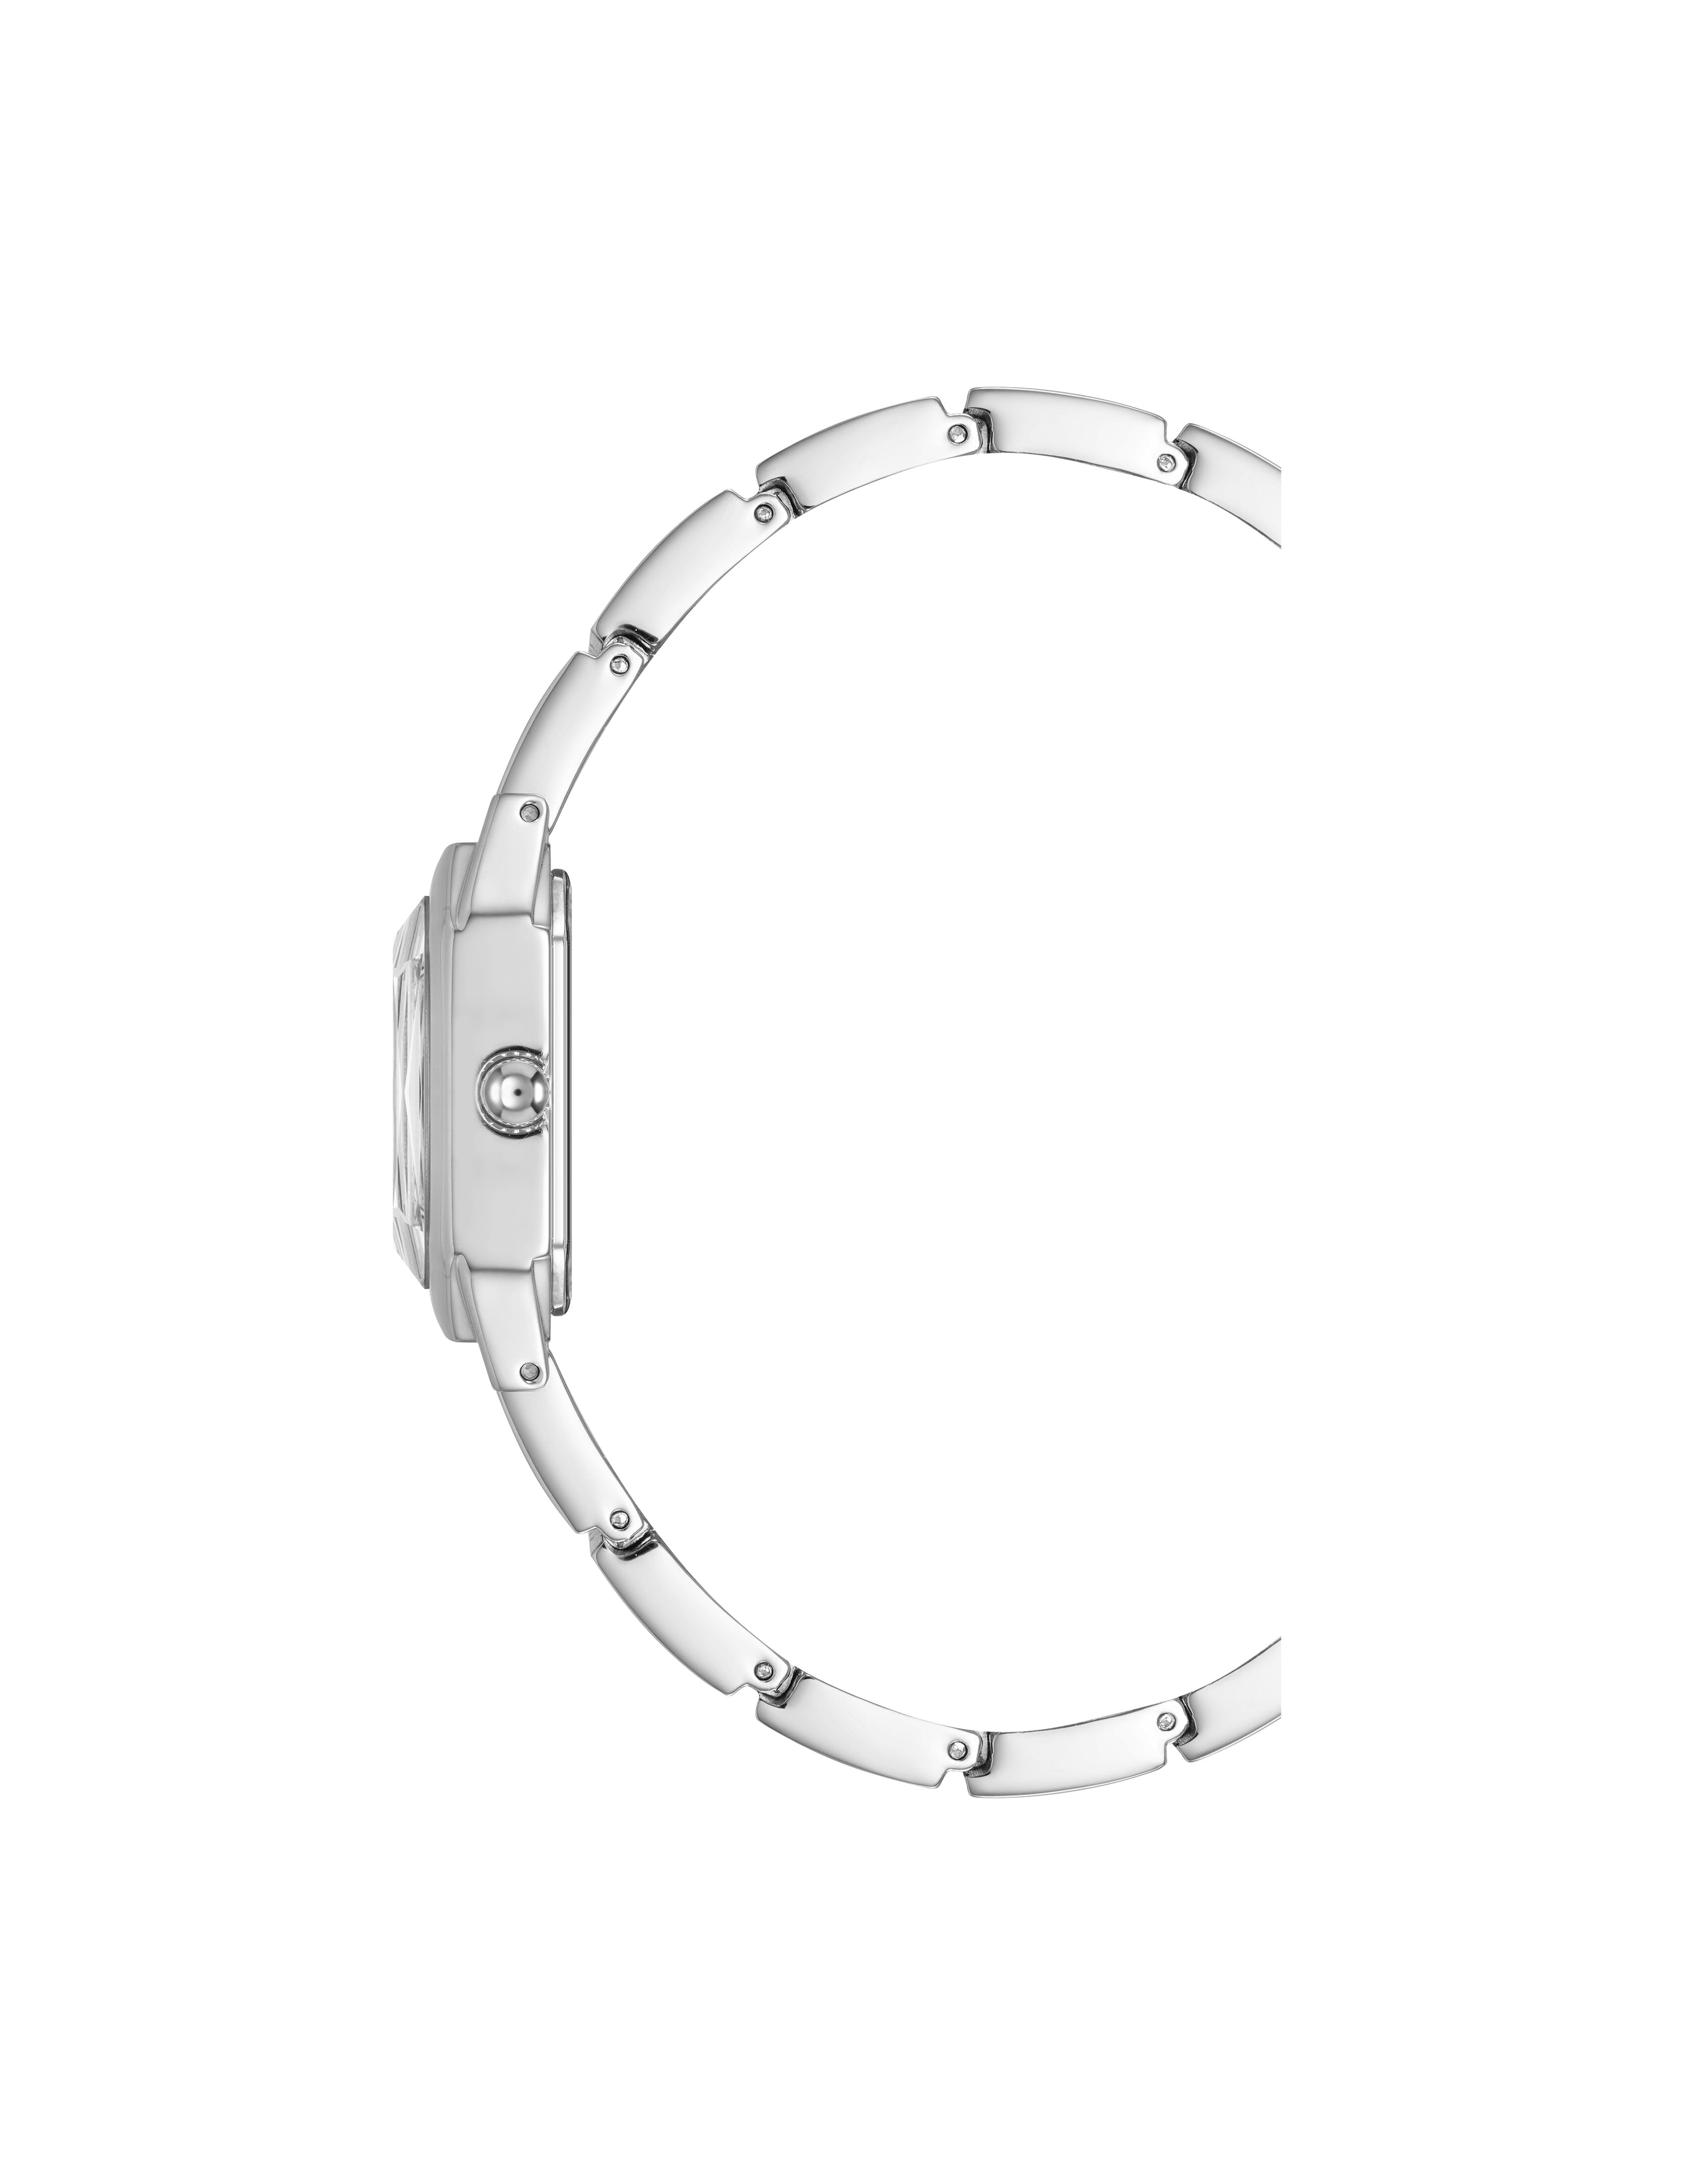 Anne Klein Women's Iconic Octagonal Crystal Bracelet Watch in Silver-Tone